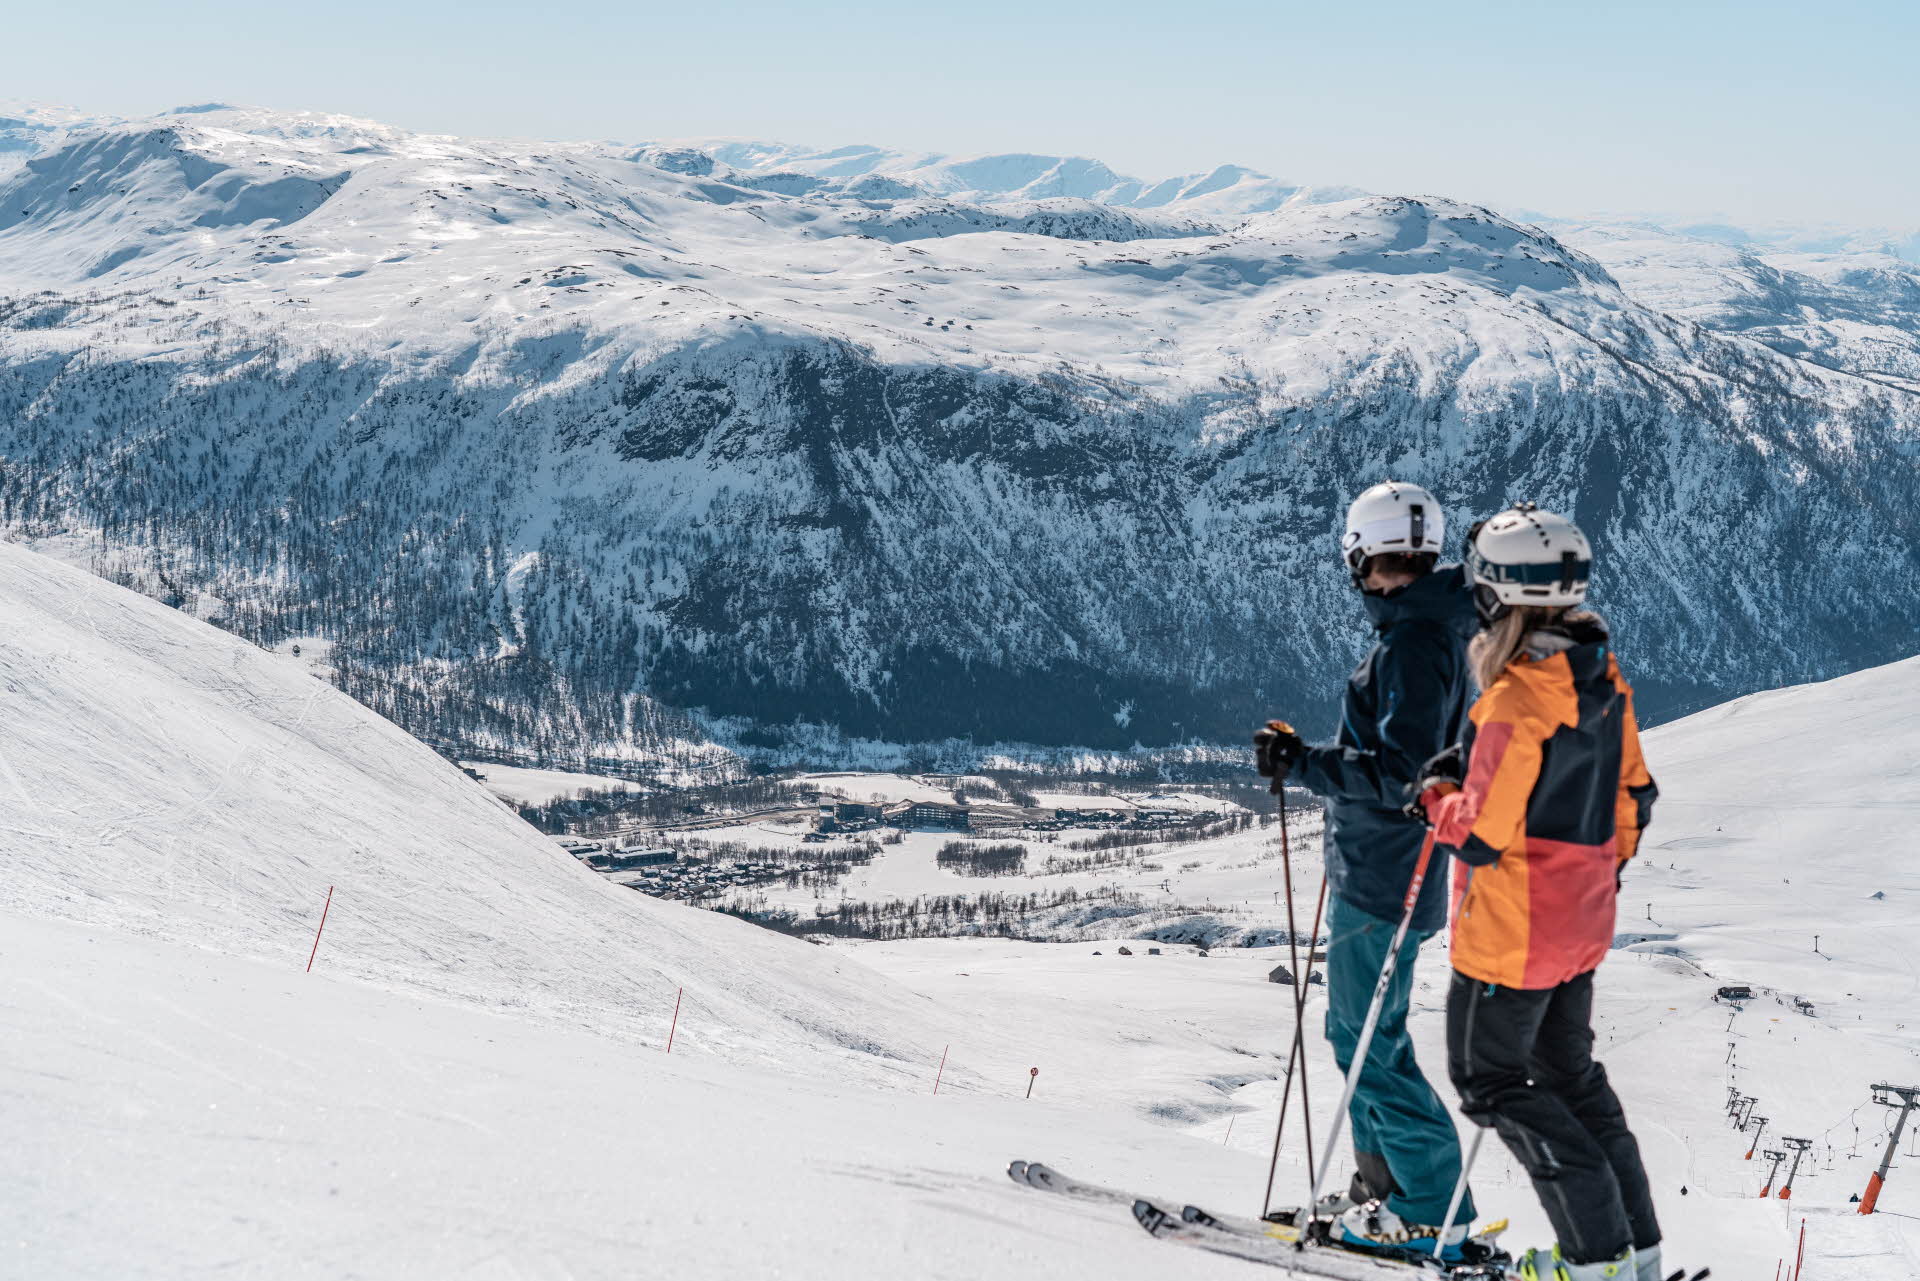 两个人在滑雪板上俯瞰着迈克达林 (Myrkdalen) 的山坡和周围的雪山